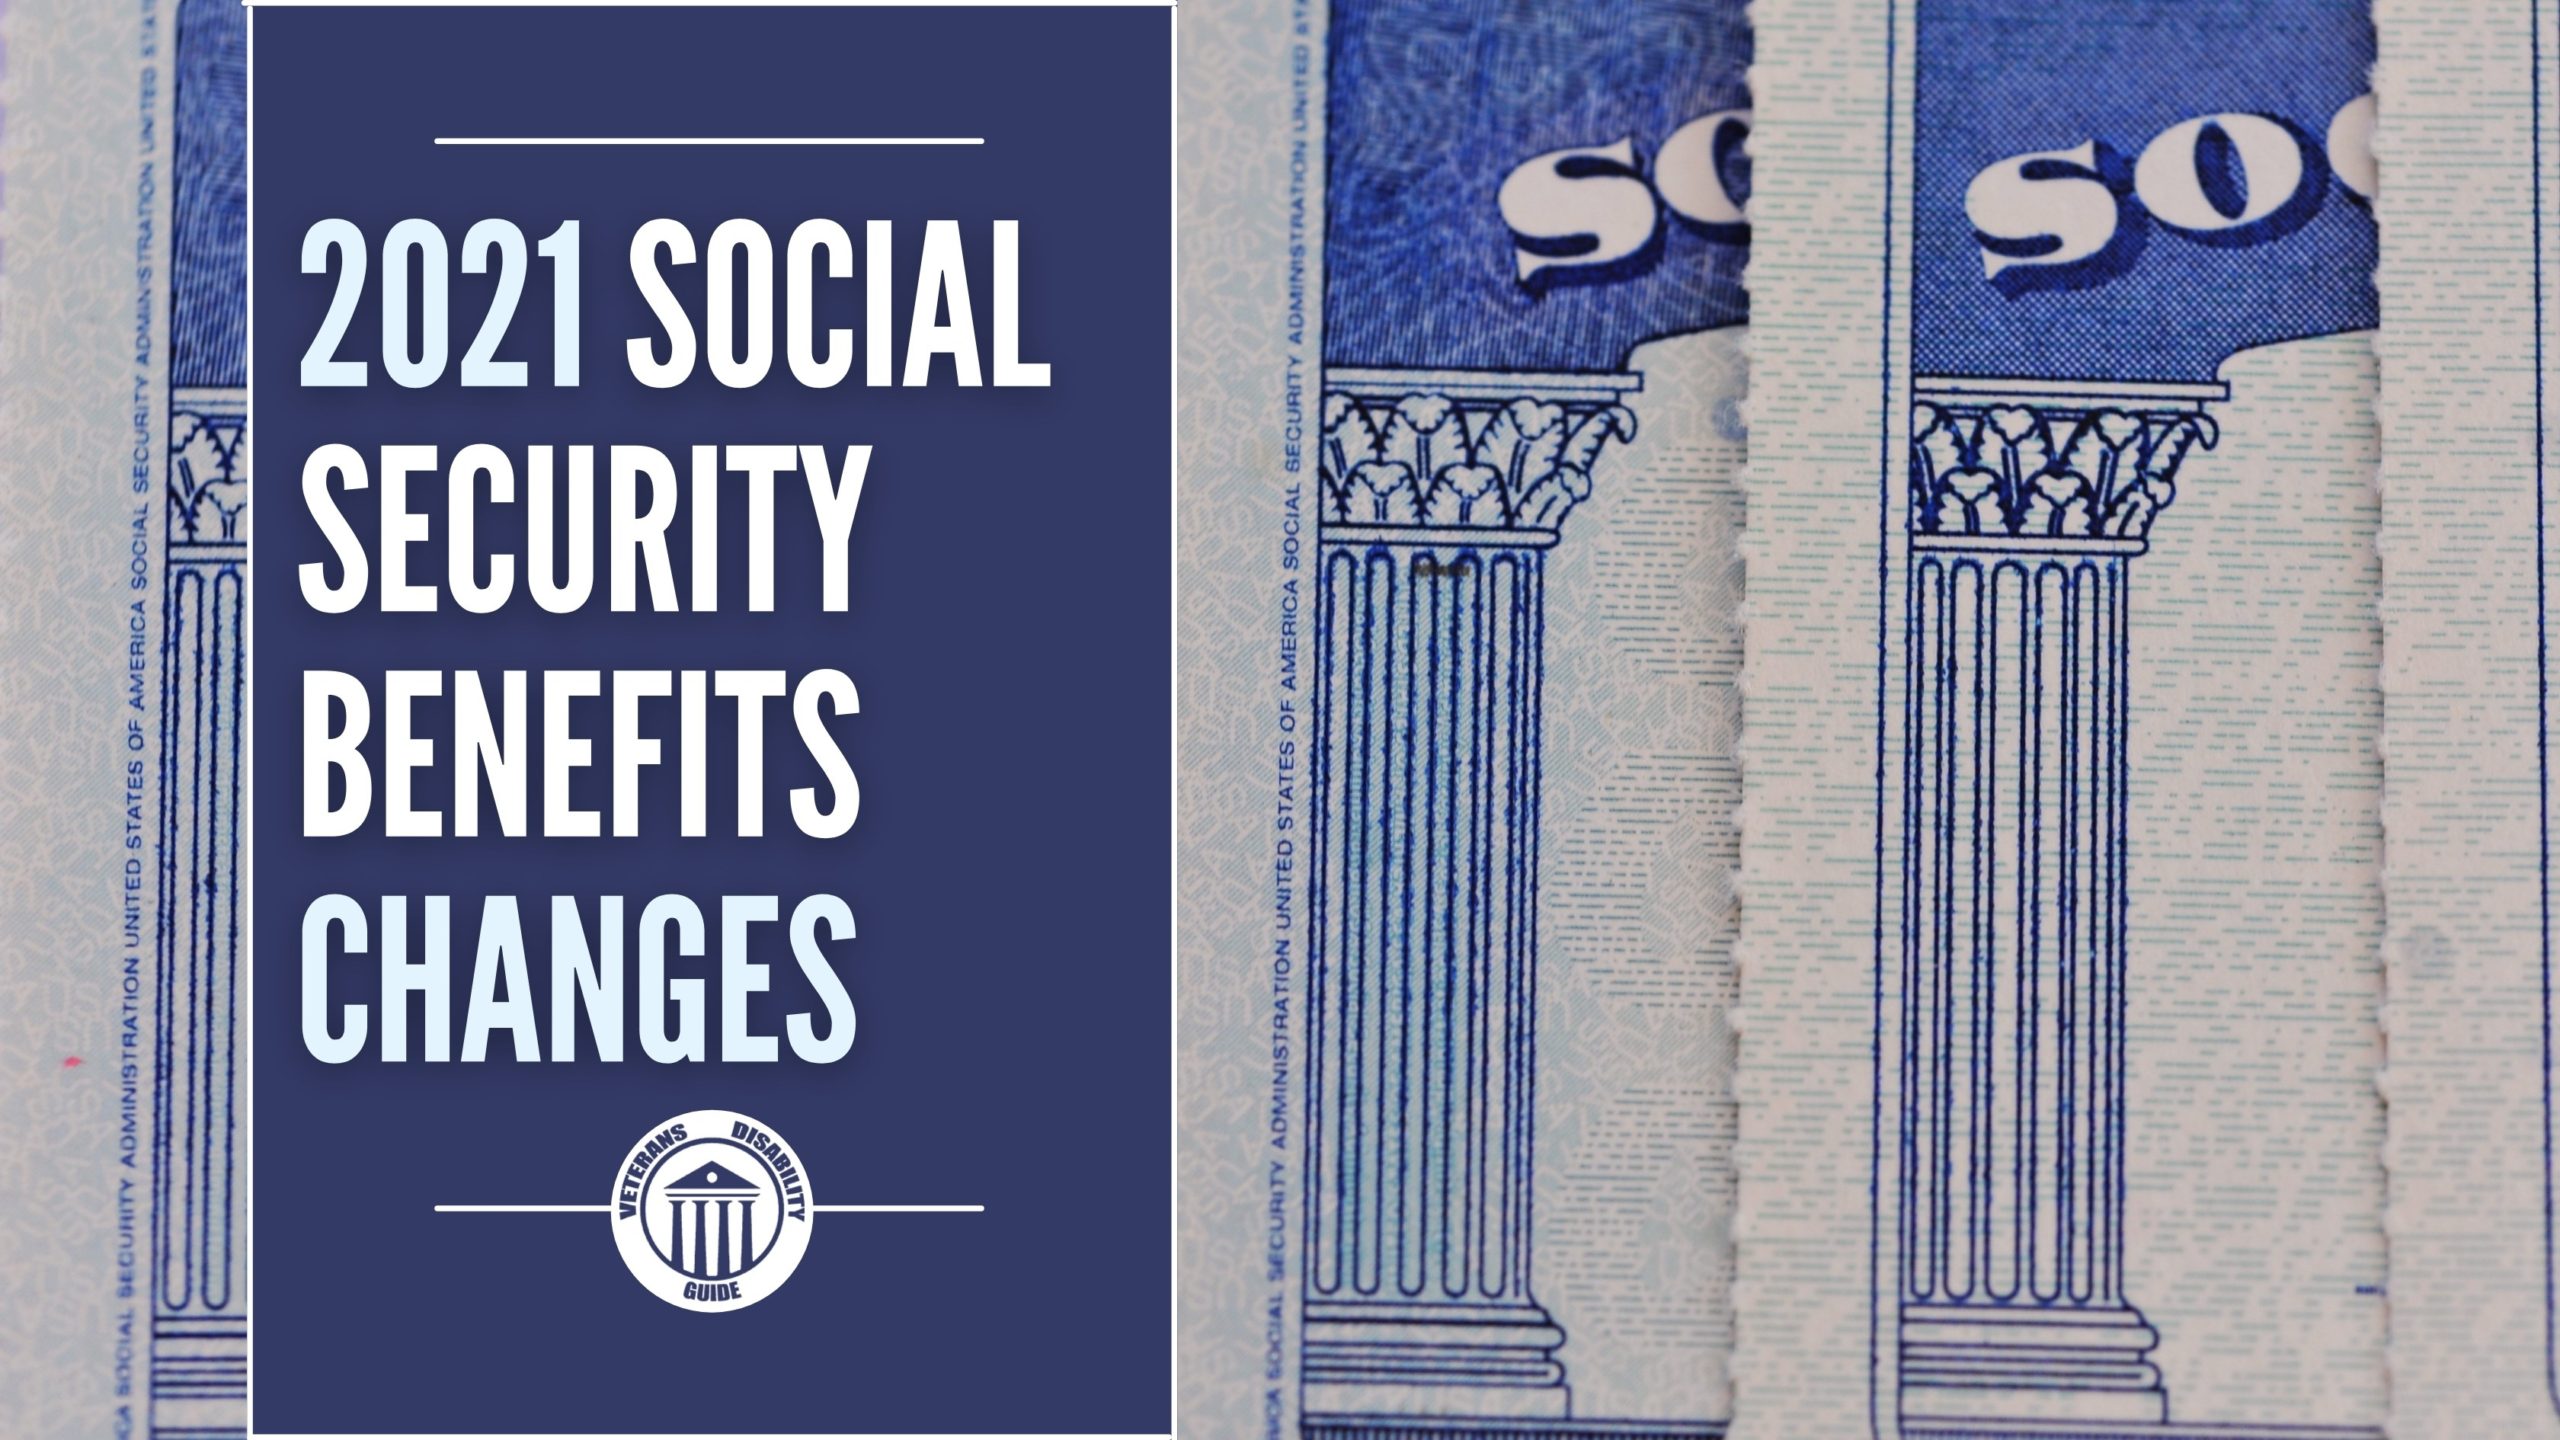 2021 Social Security Benefits Changes Blog header image